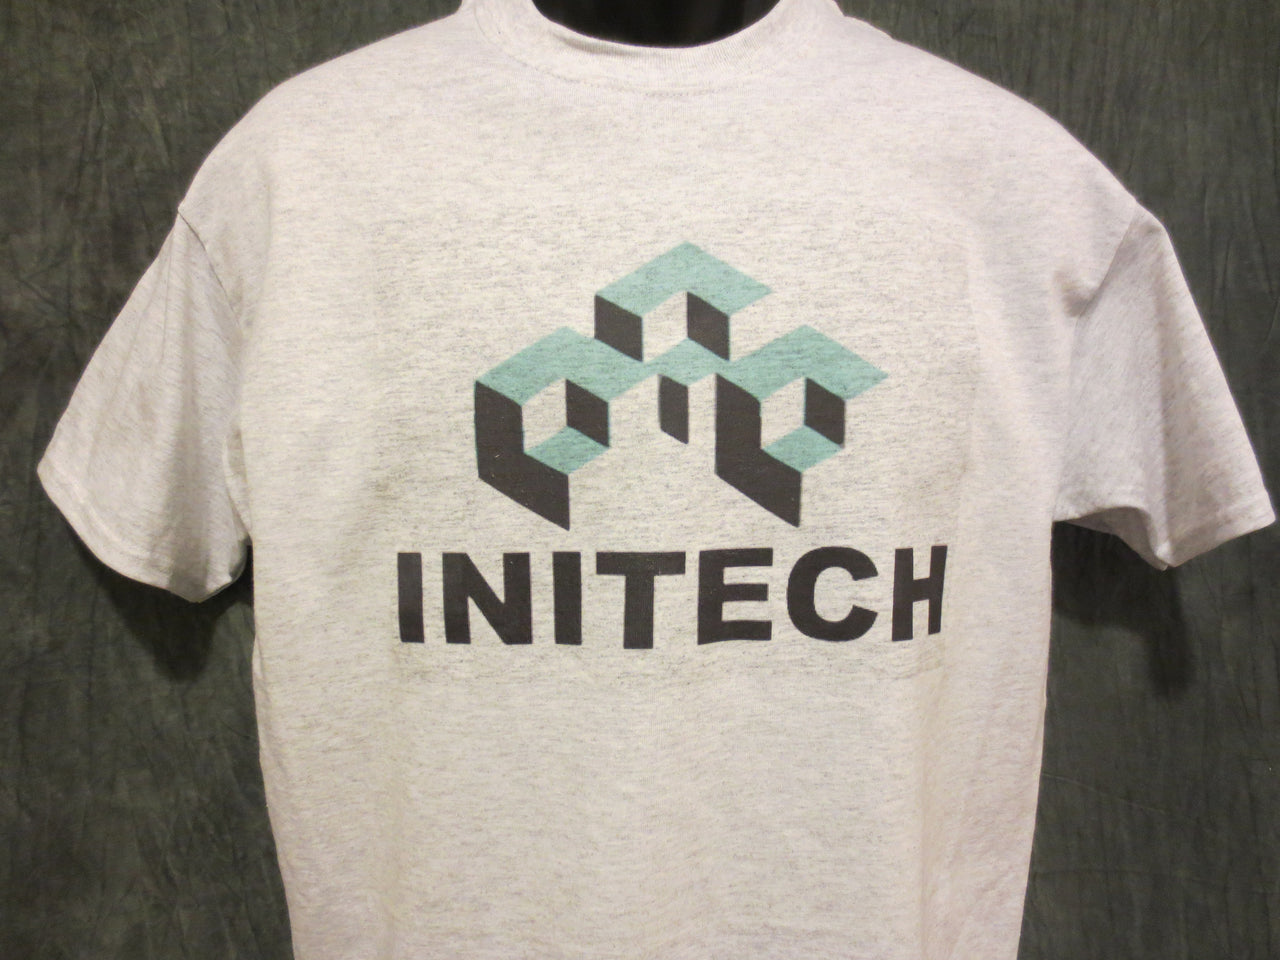 Office Space Initech Logo Tshirt - TshirtNow.net - 1